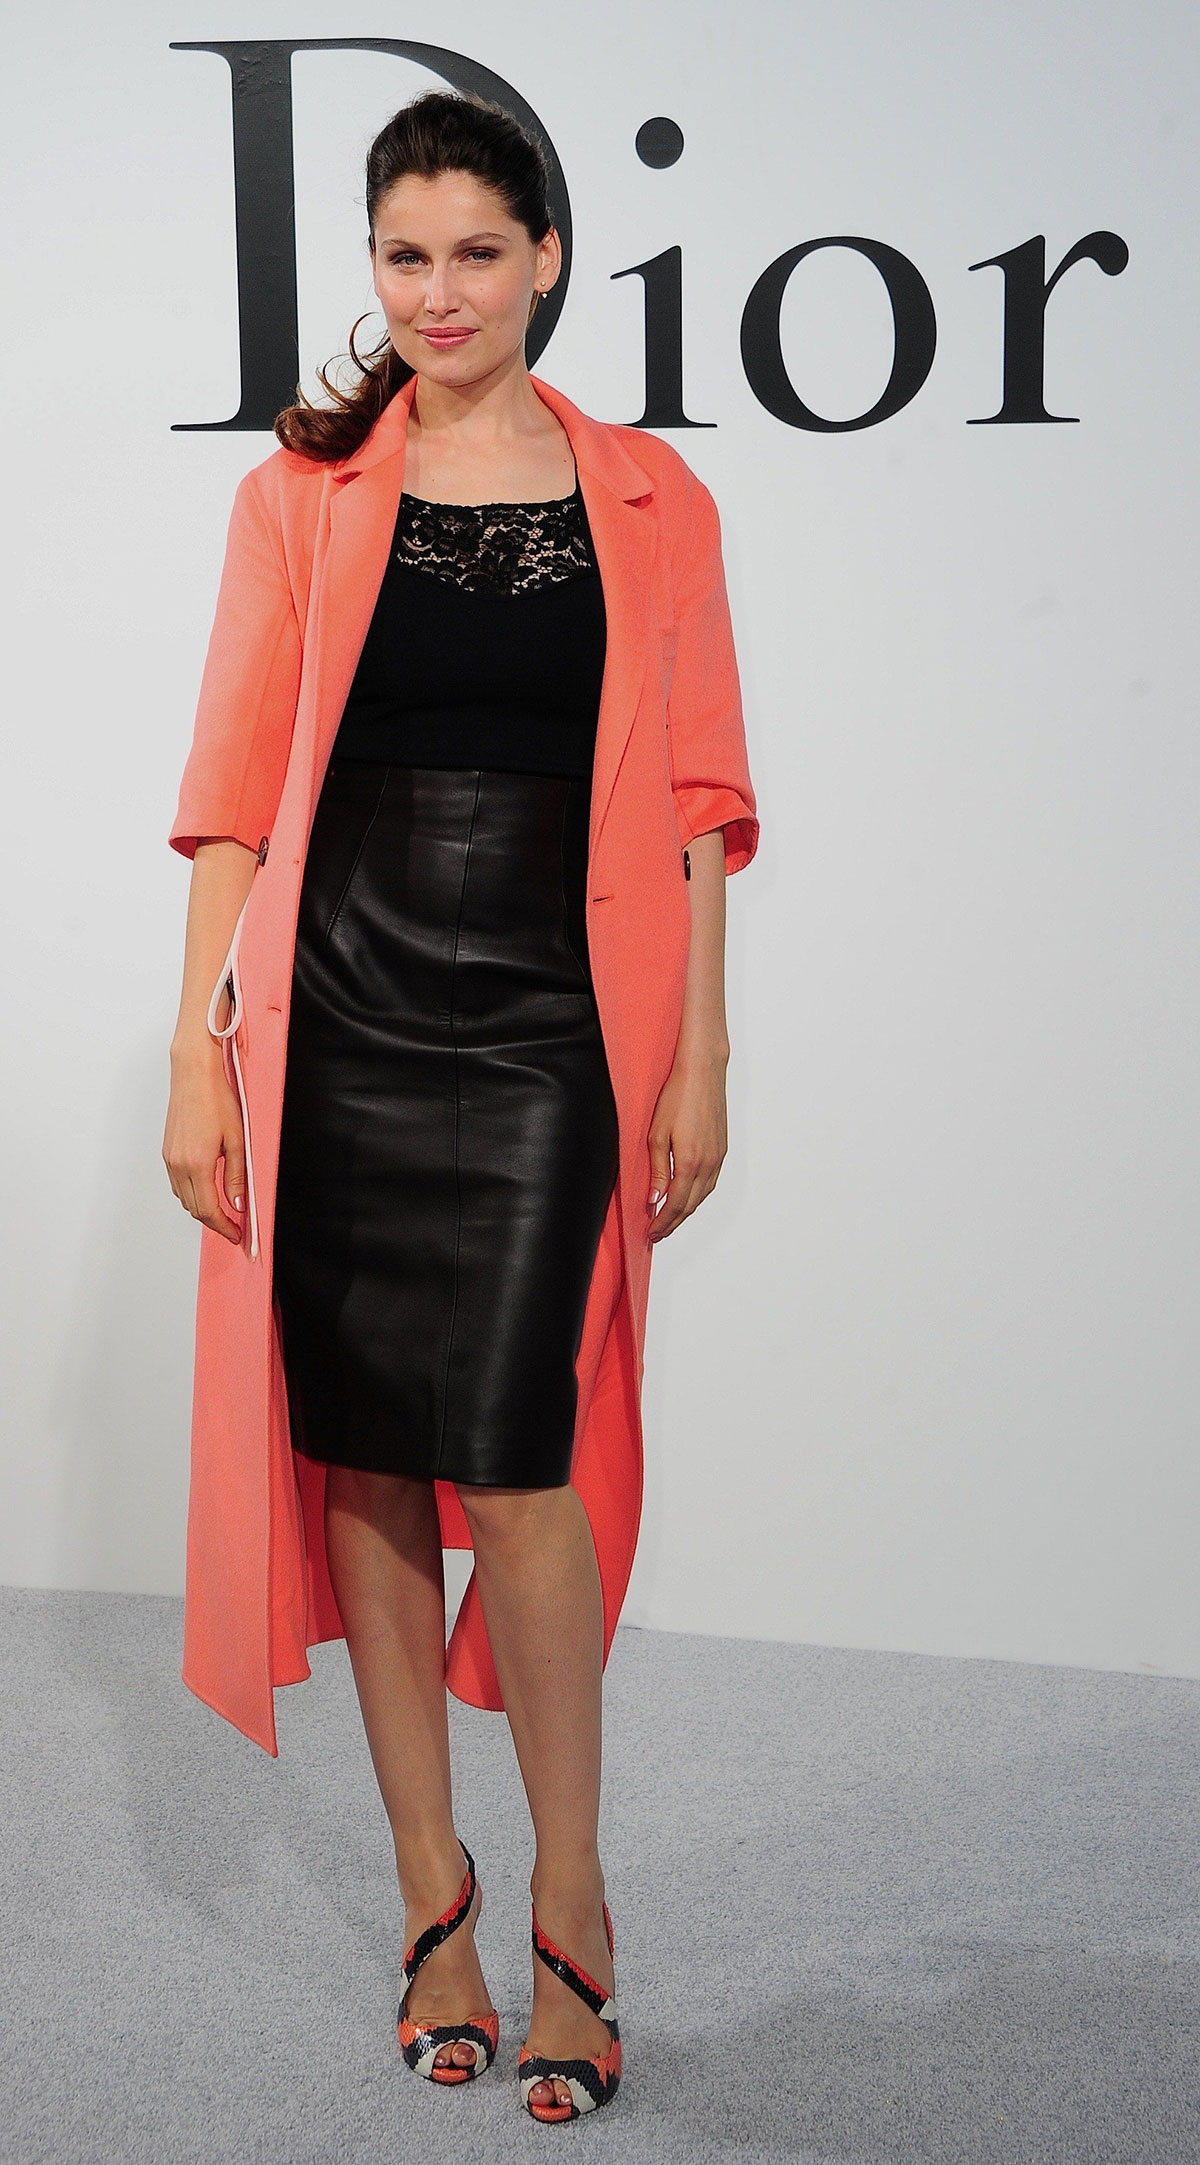 Laeticia Casta attends Dior Cruise 2015 Fashion Show